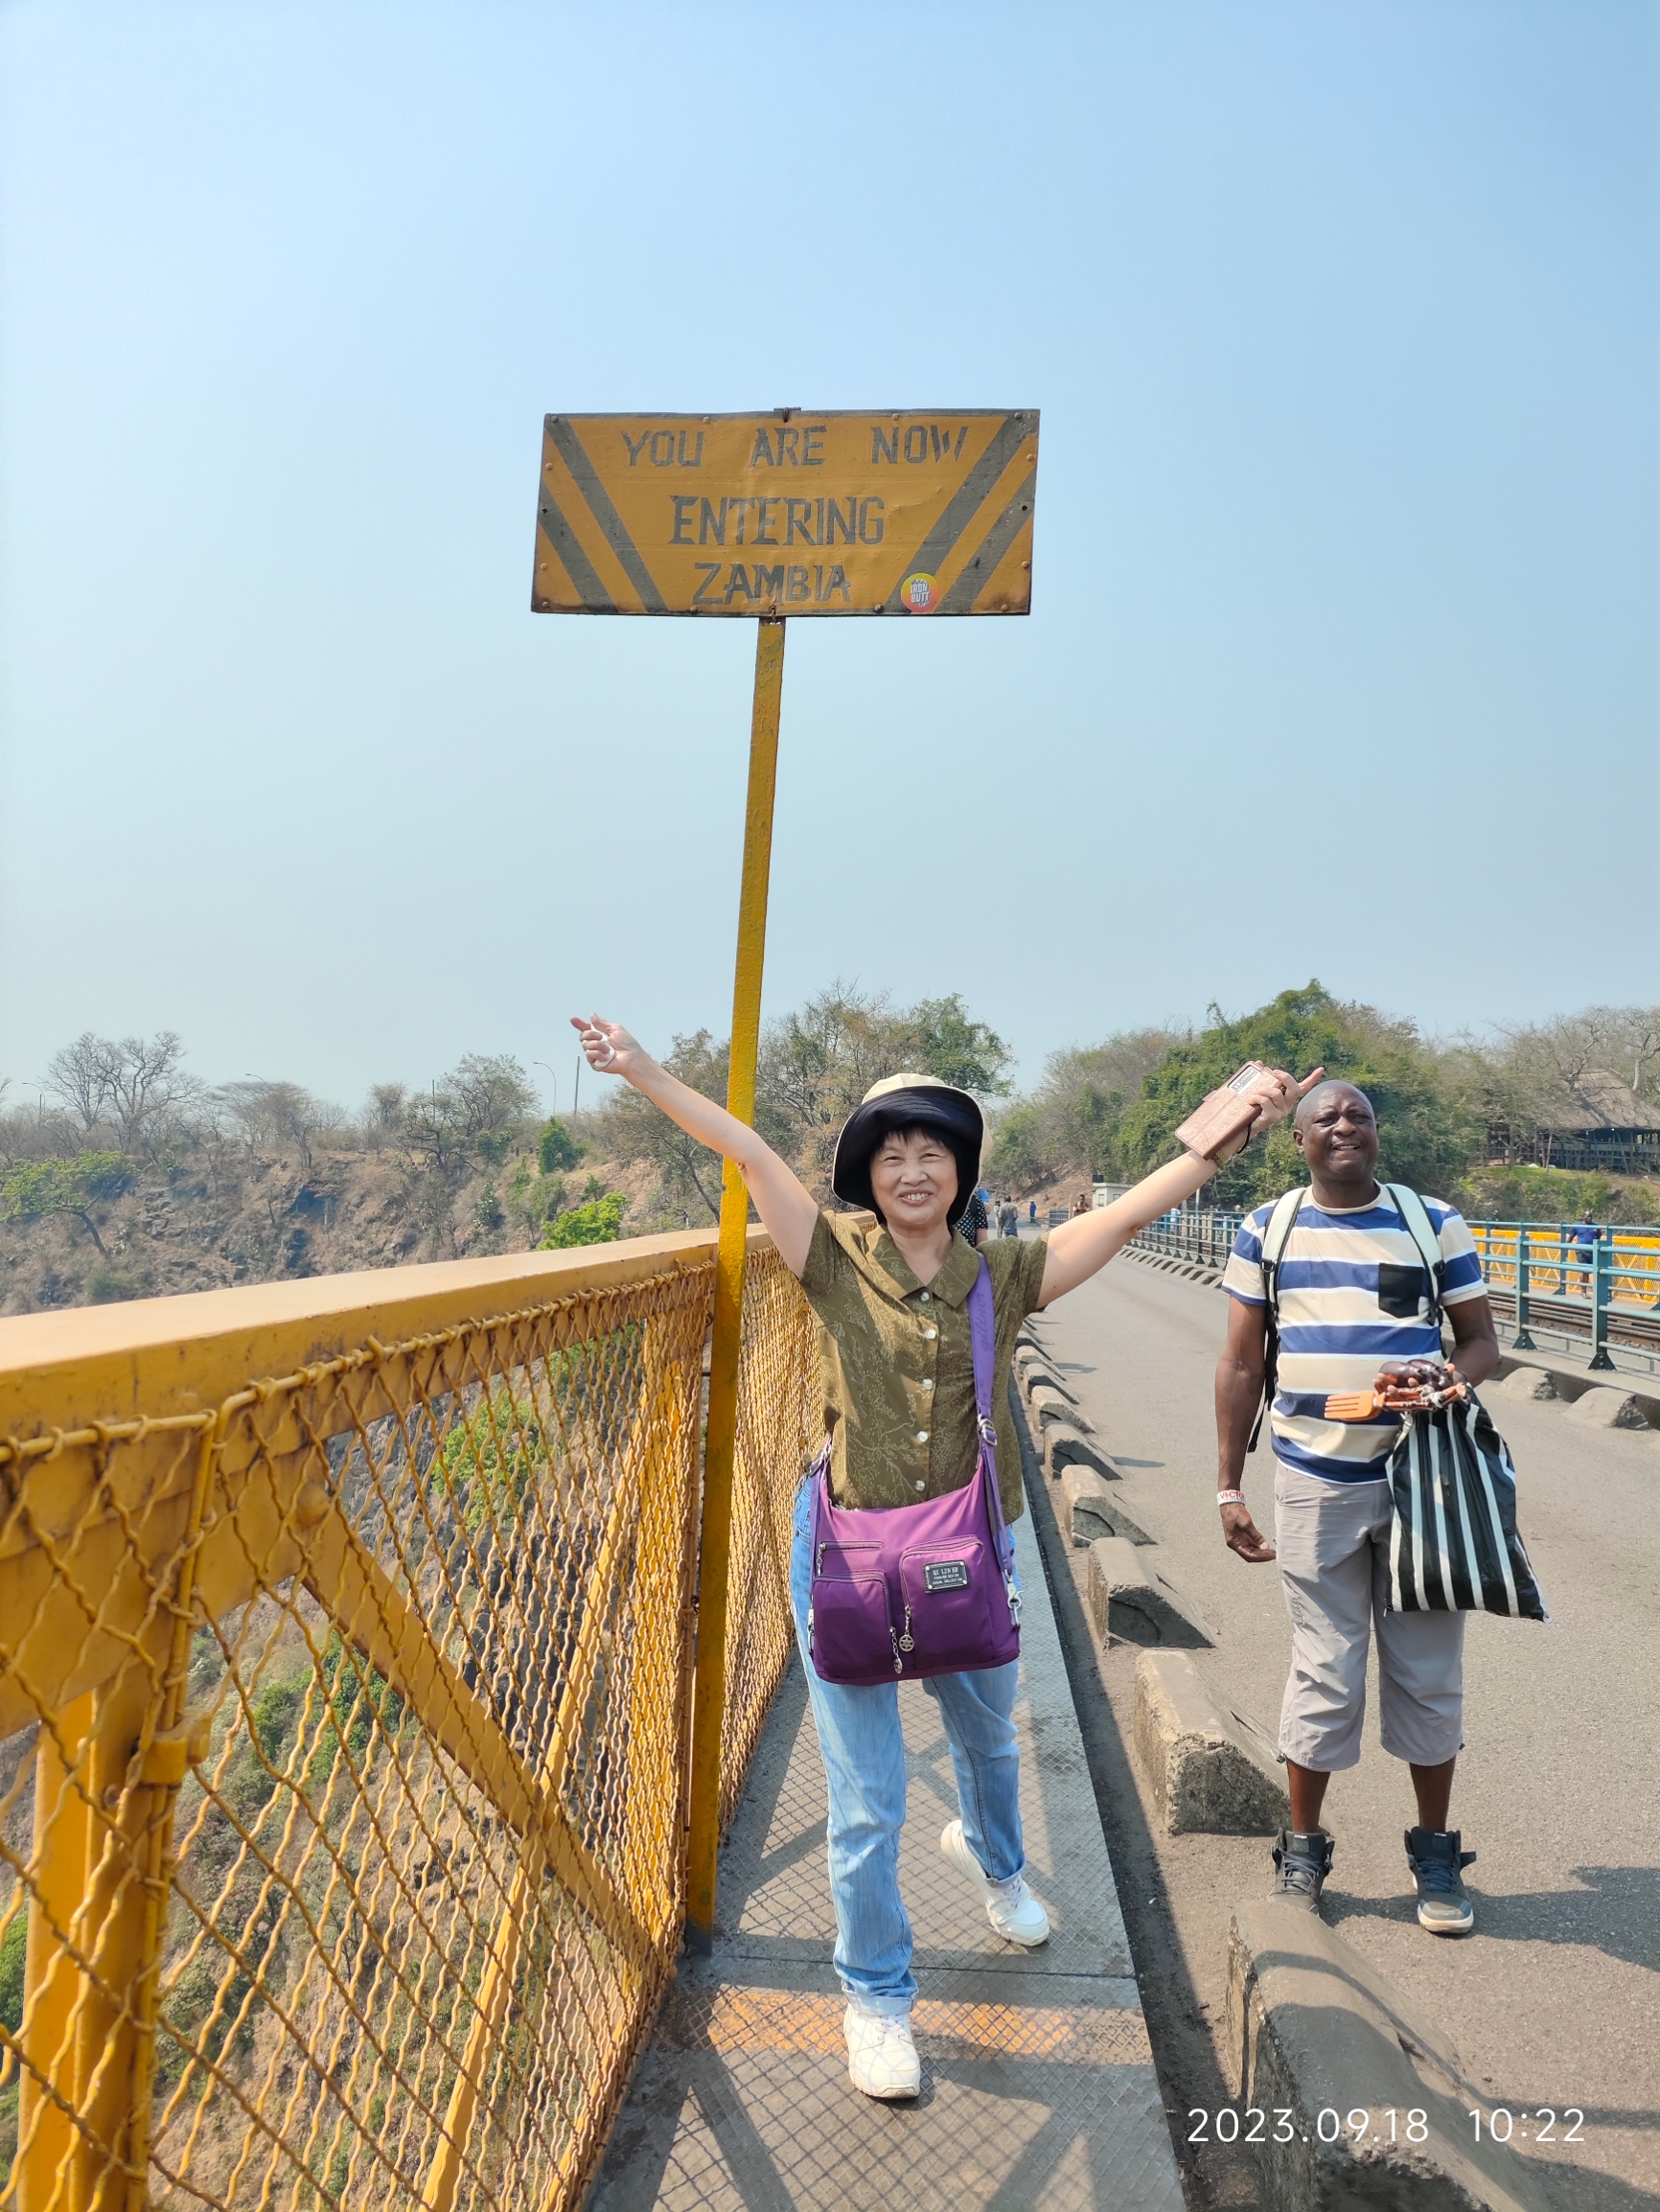 一河两岸，桥连两国；一步过境，脚踏两国。(100多年历史的维多利亚瀑布大桥，连接赞比亚与津巴布韦，铁